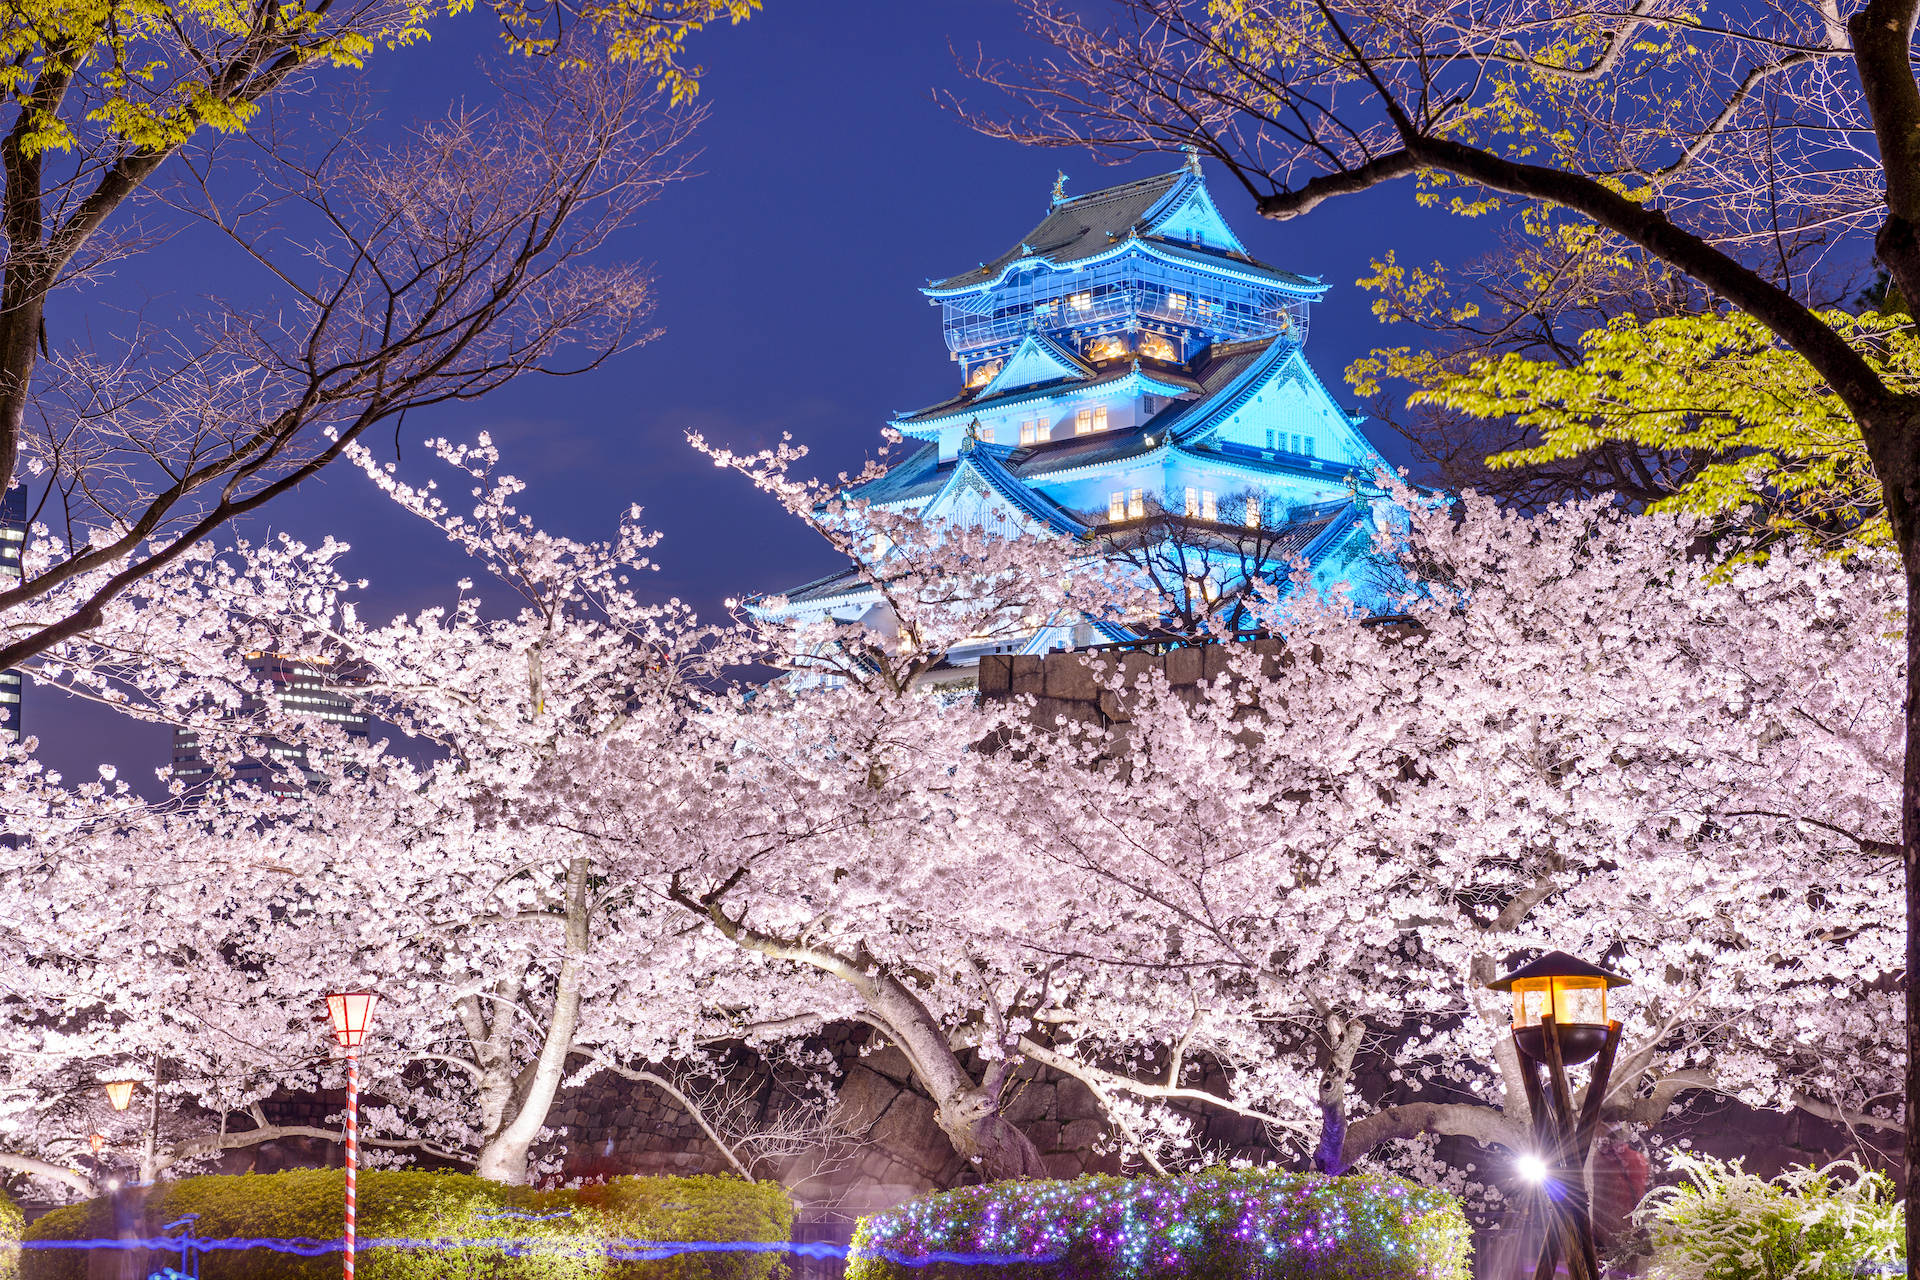 Japanin Voller Blüte - Eine Atemberaubende Aussicht Auf Die Kirschblüten In Der Region Des Mount Fuji Wallpaper